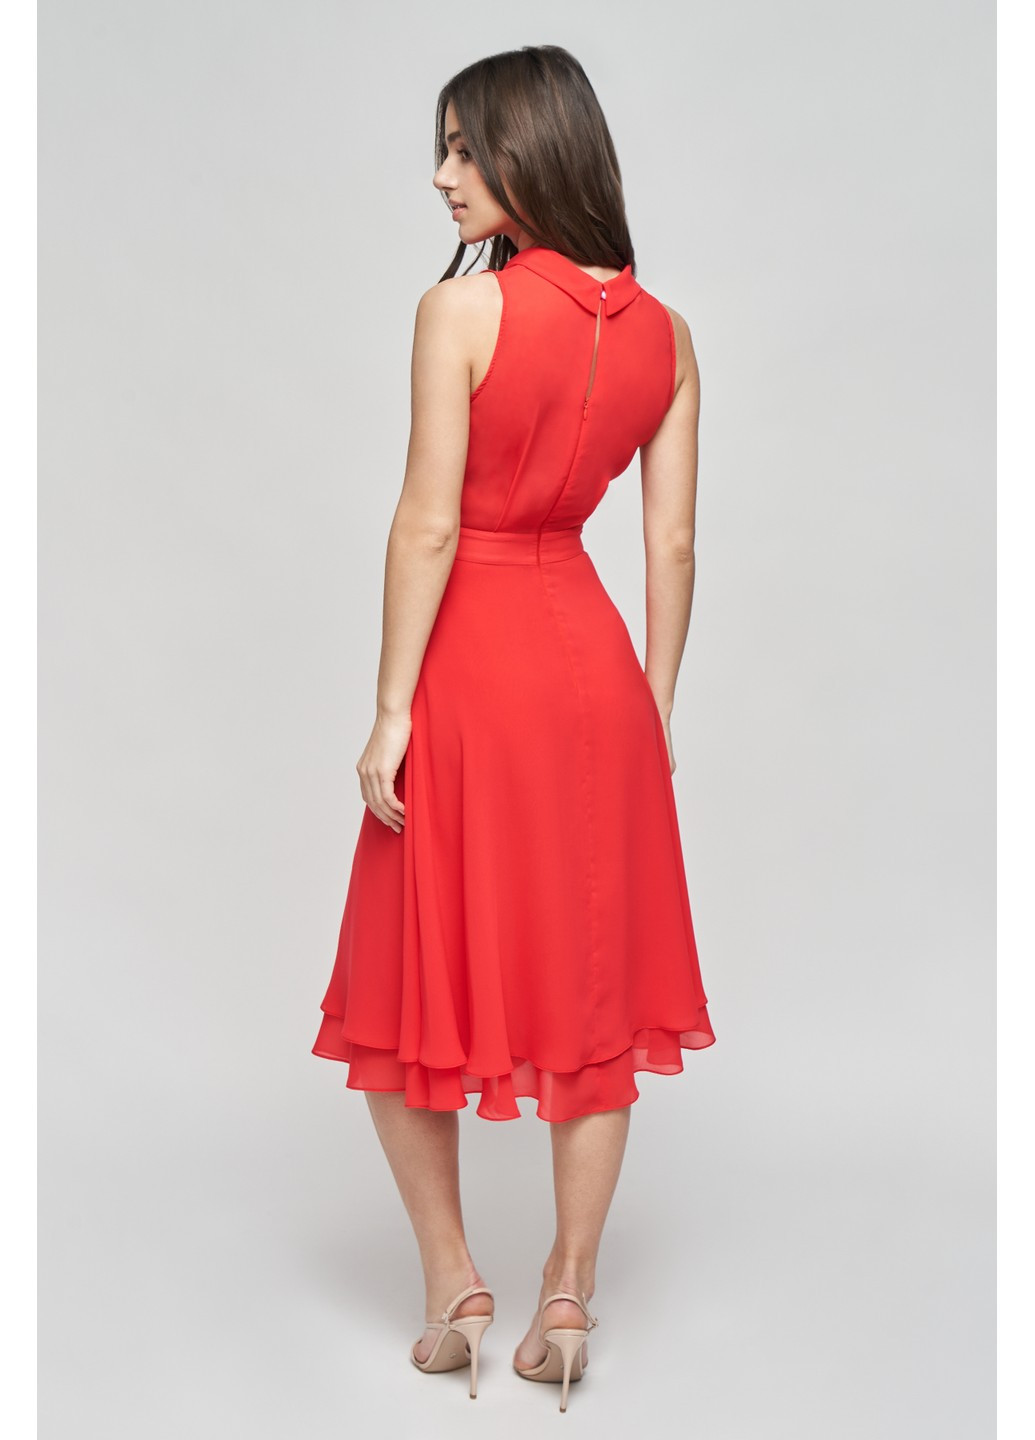 Червона коктейльна шовкова сукня стефані кльош, з пишною спідницею BYURSE однотонна